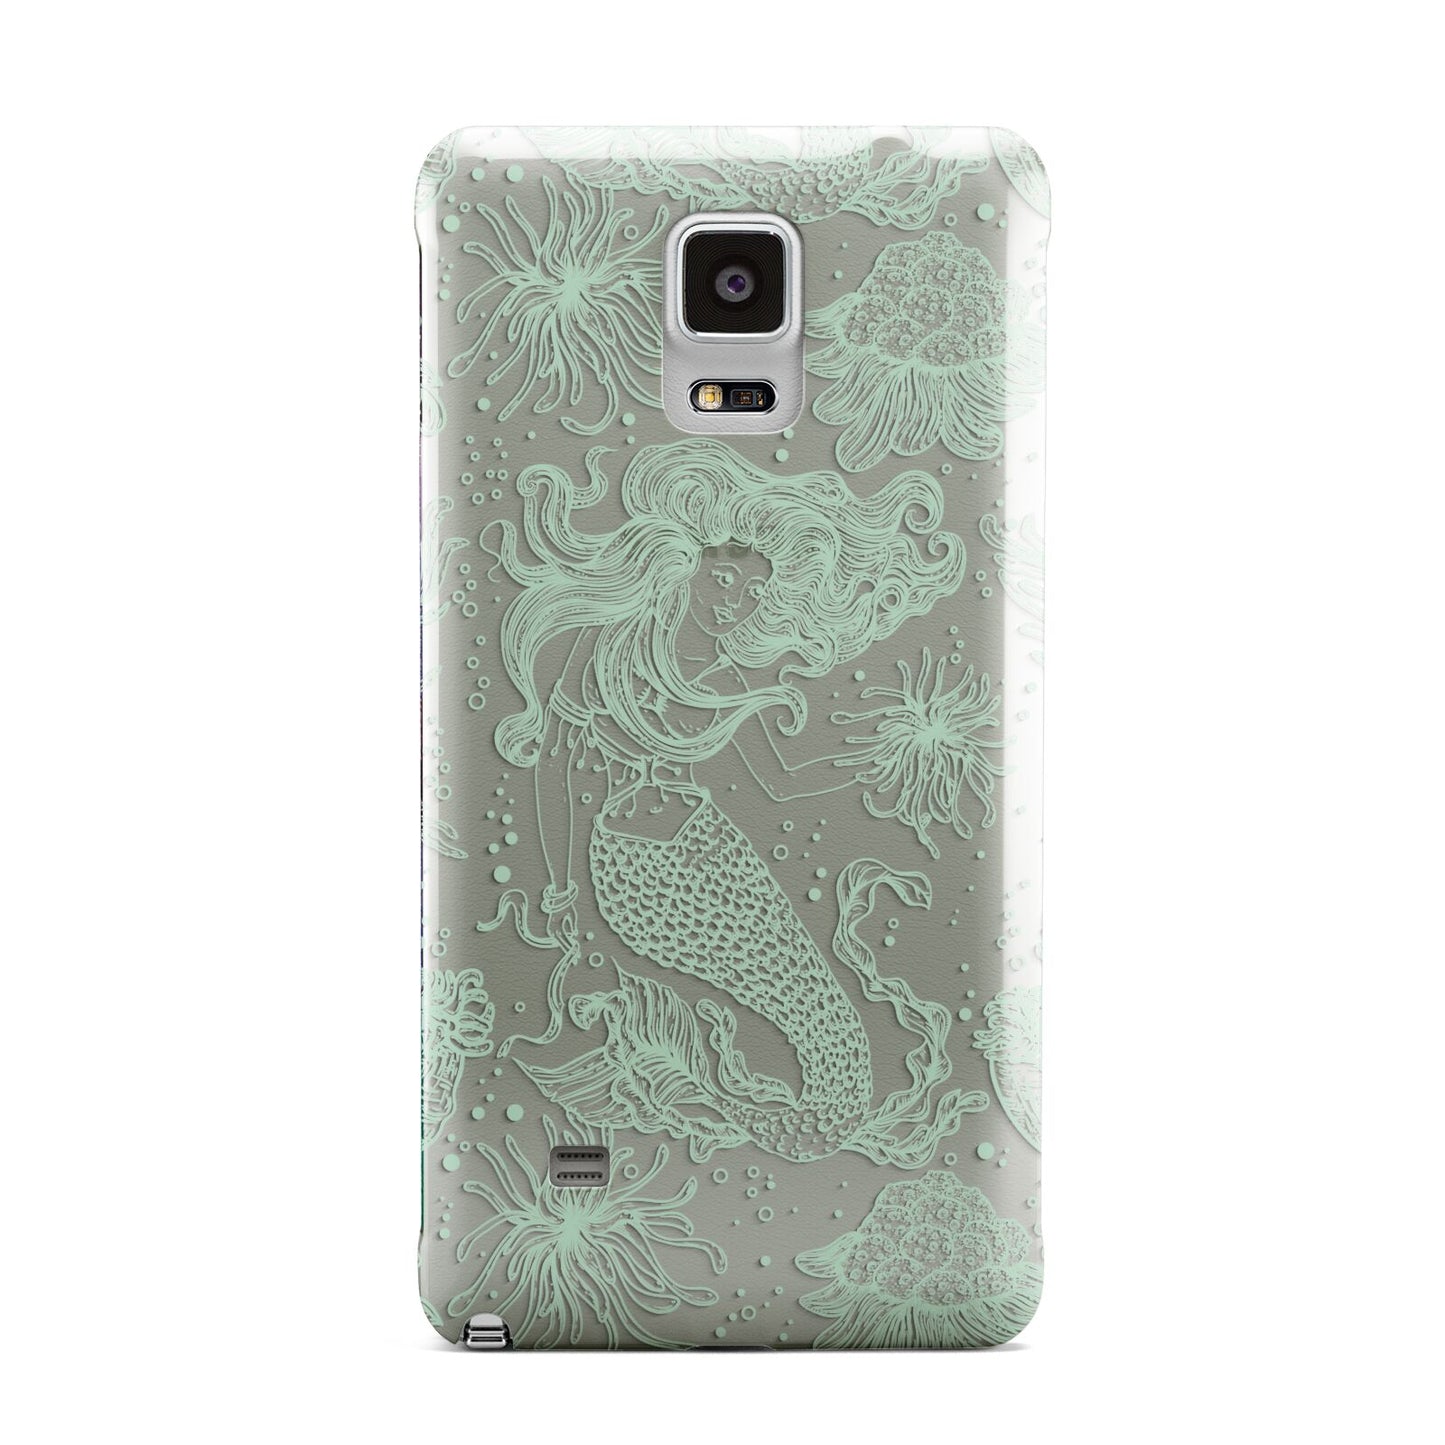 Sea Mermaid Samsung Galaxy Note 4 Case